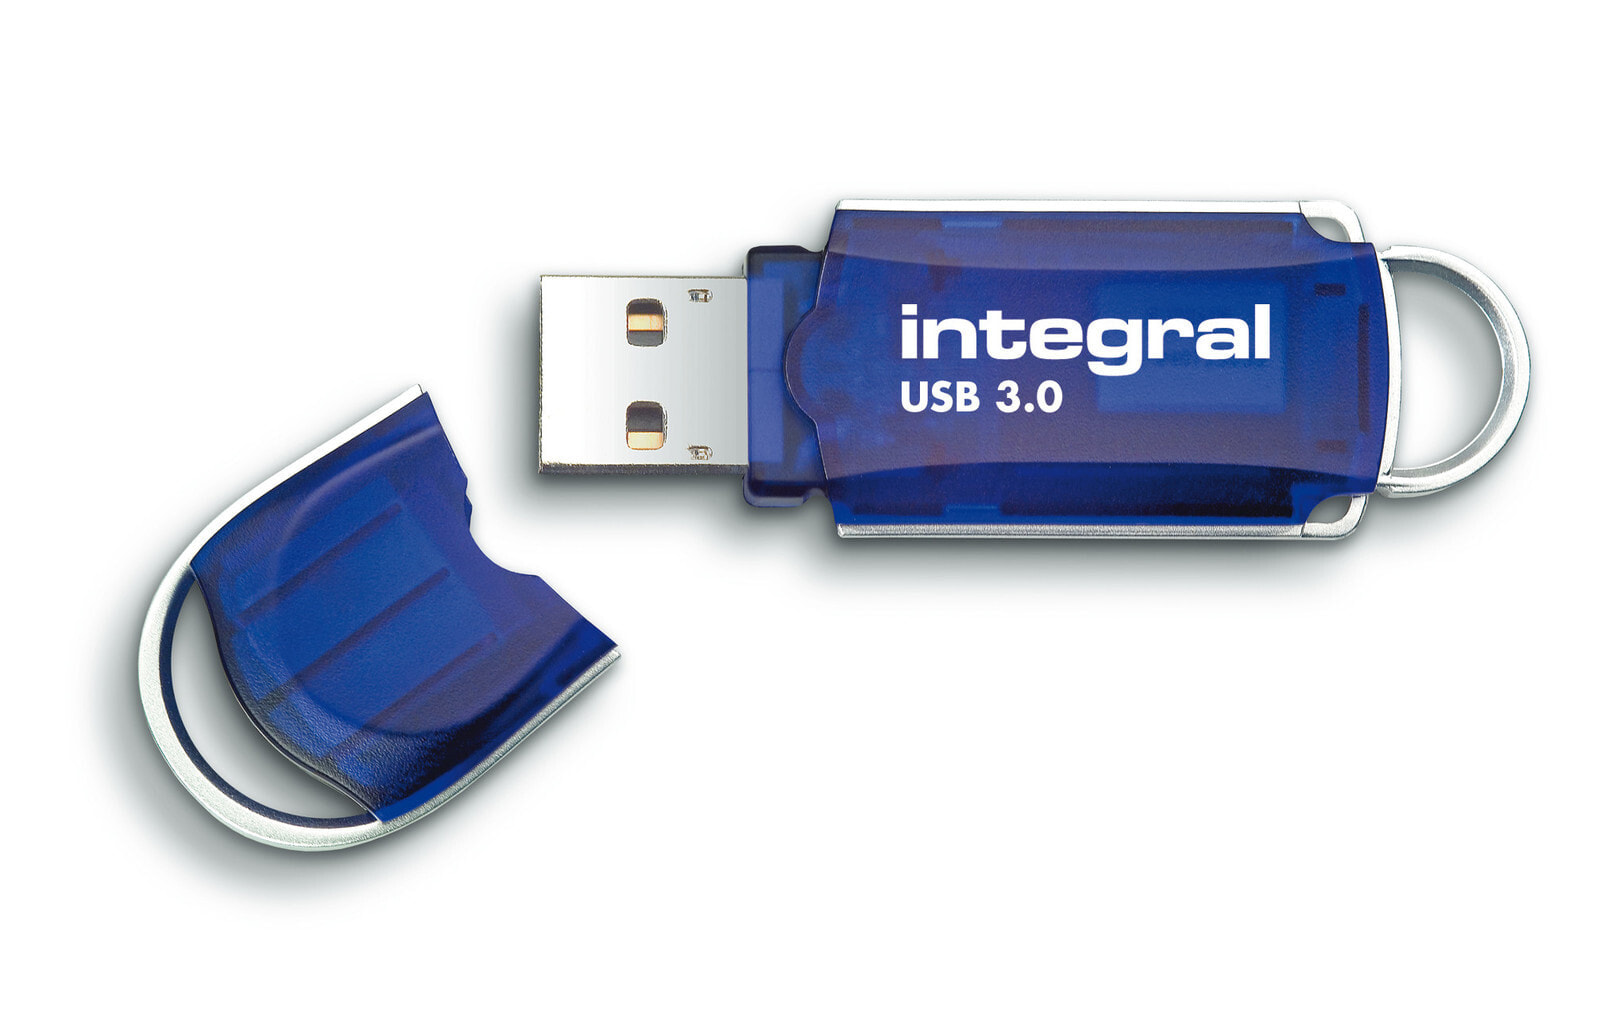 Integral 128GB USB3.0 DRIVE COURIER BLUE UP TO R-120 W-30 MBS USB флеш накопитель USB тип-A 3.2 Gen 1 (3.1 Gen 1) Синий, Серебристый INFD128GBCOU3.0